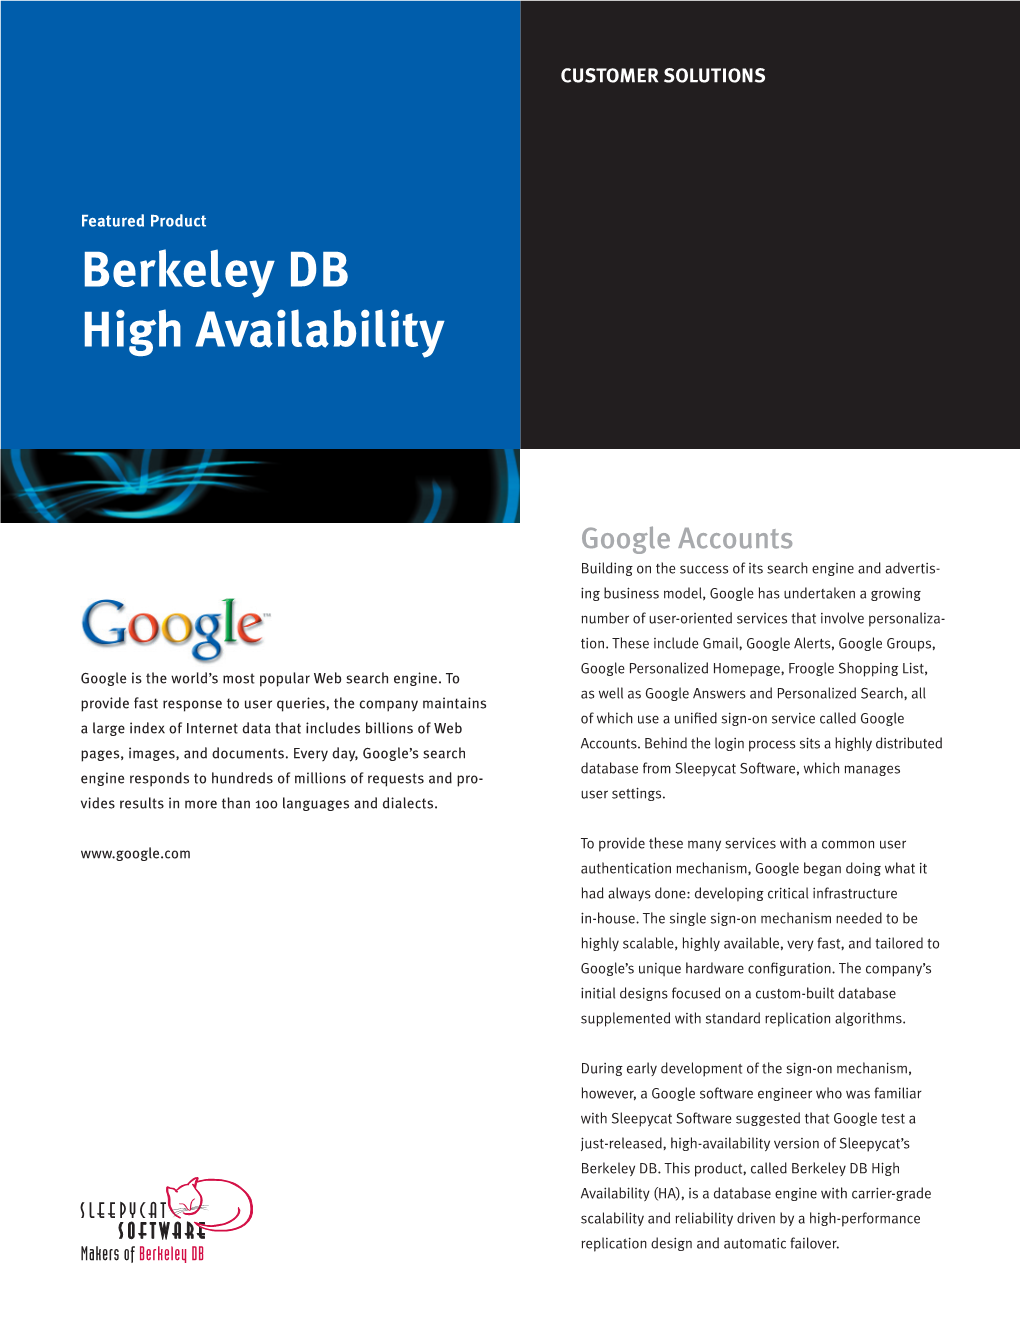 Berkeley DB High Availability